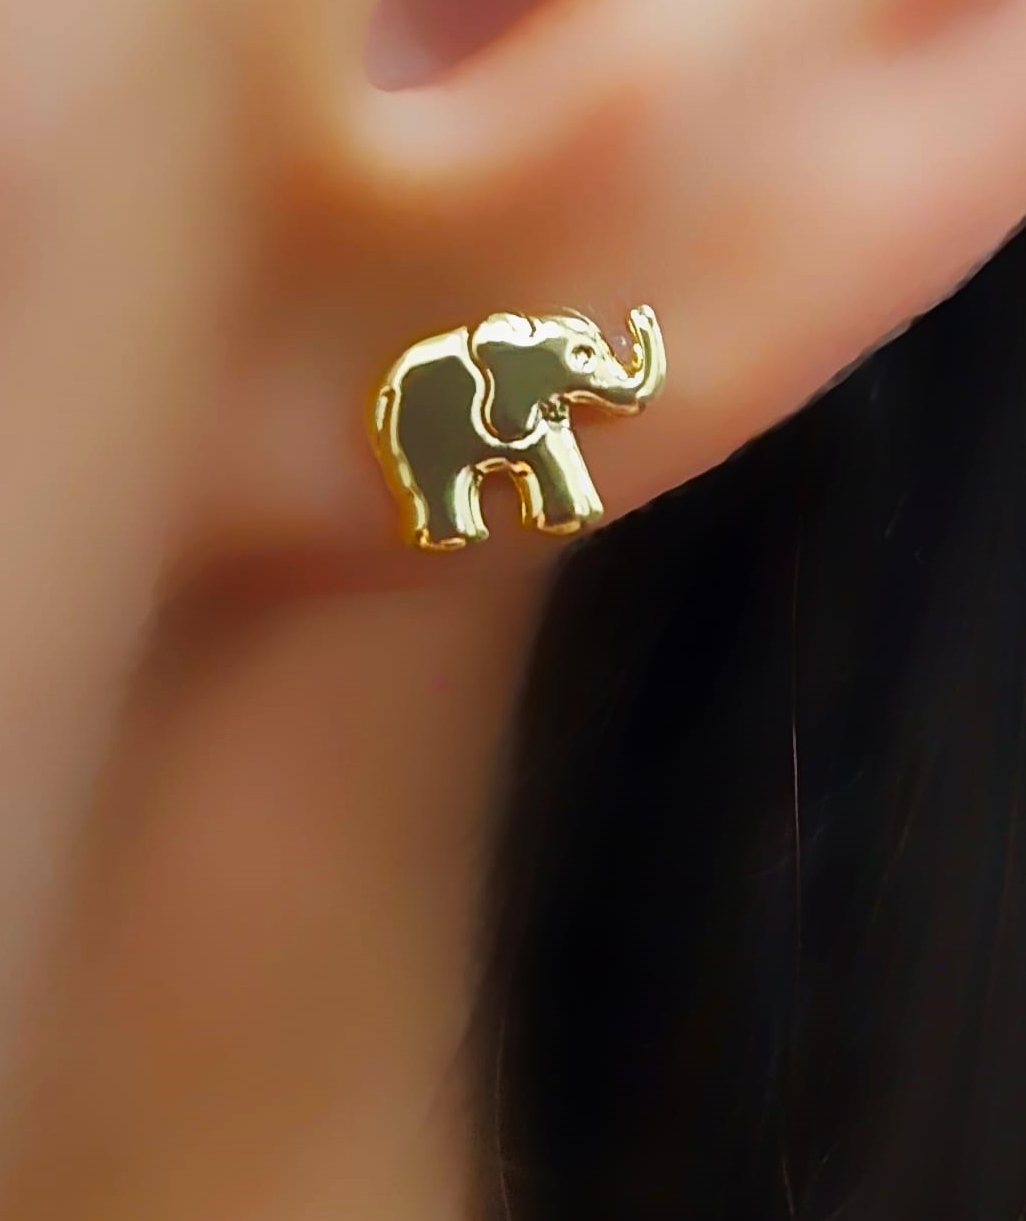 Brinco Mini Elefante Abaulado Liso Banhado em Ouro18k  - Lazzuli Joias